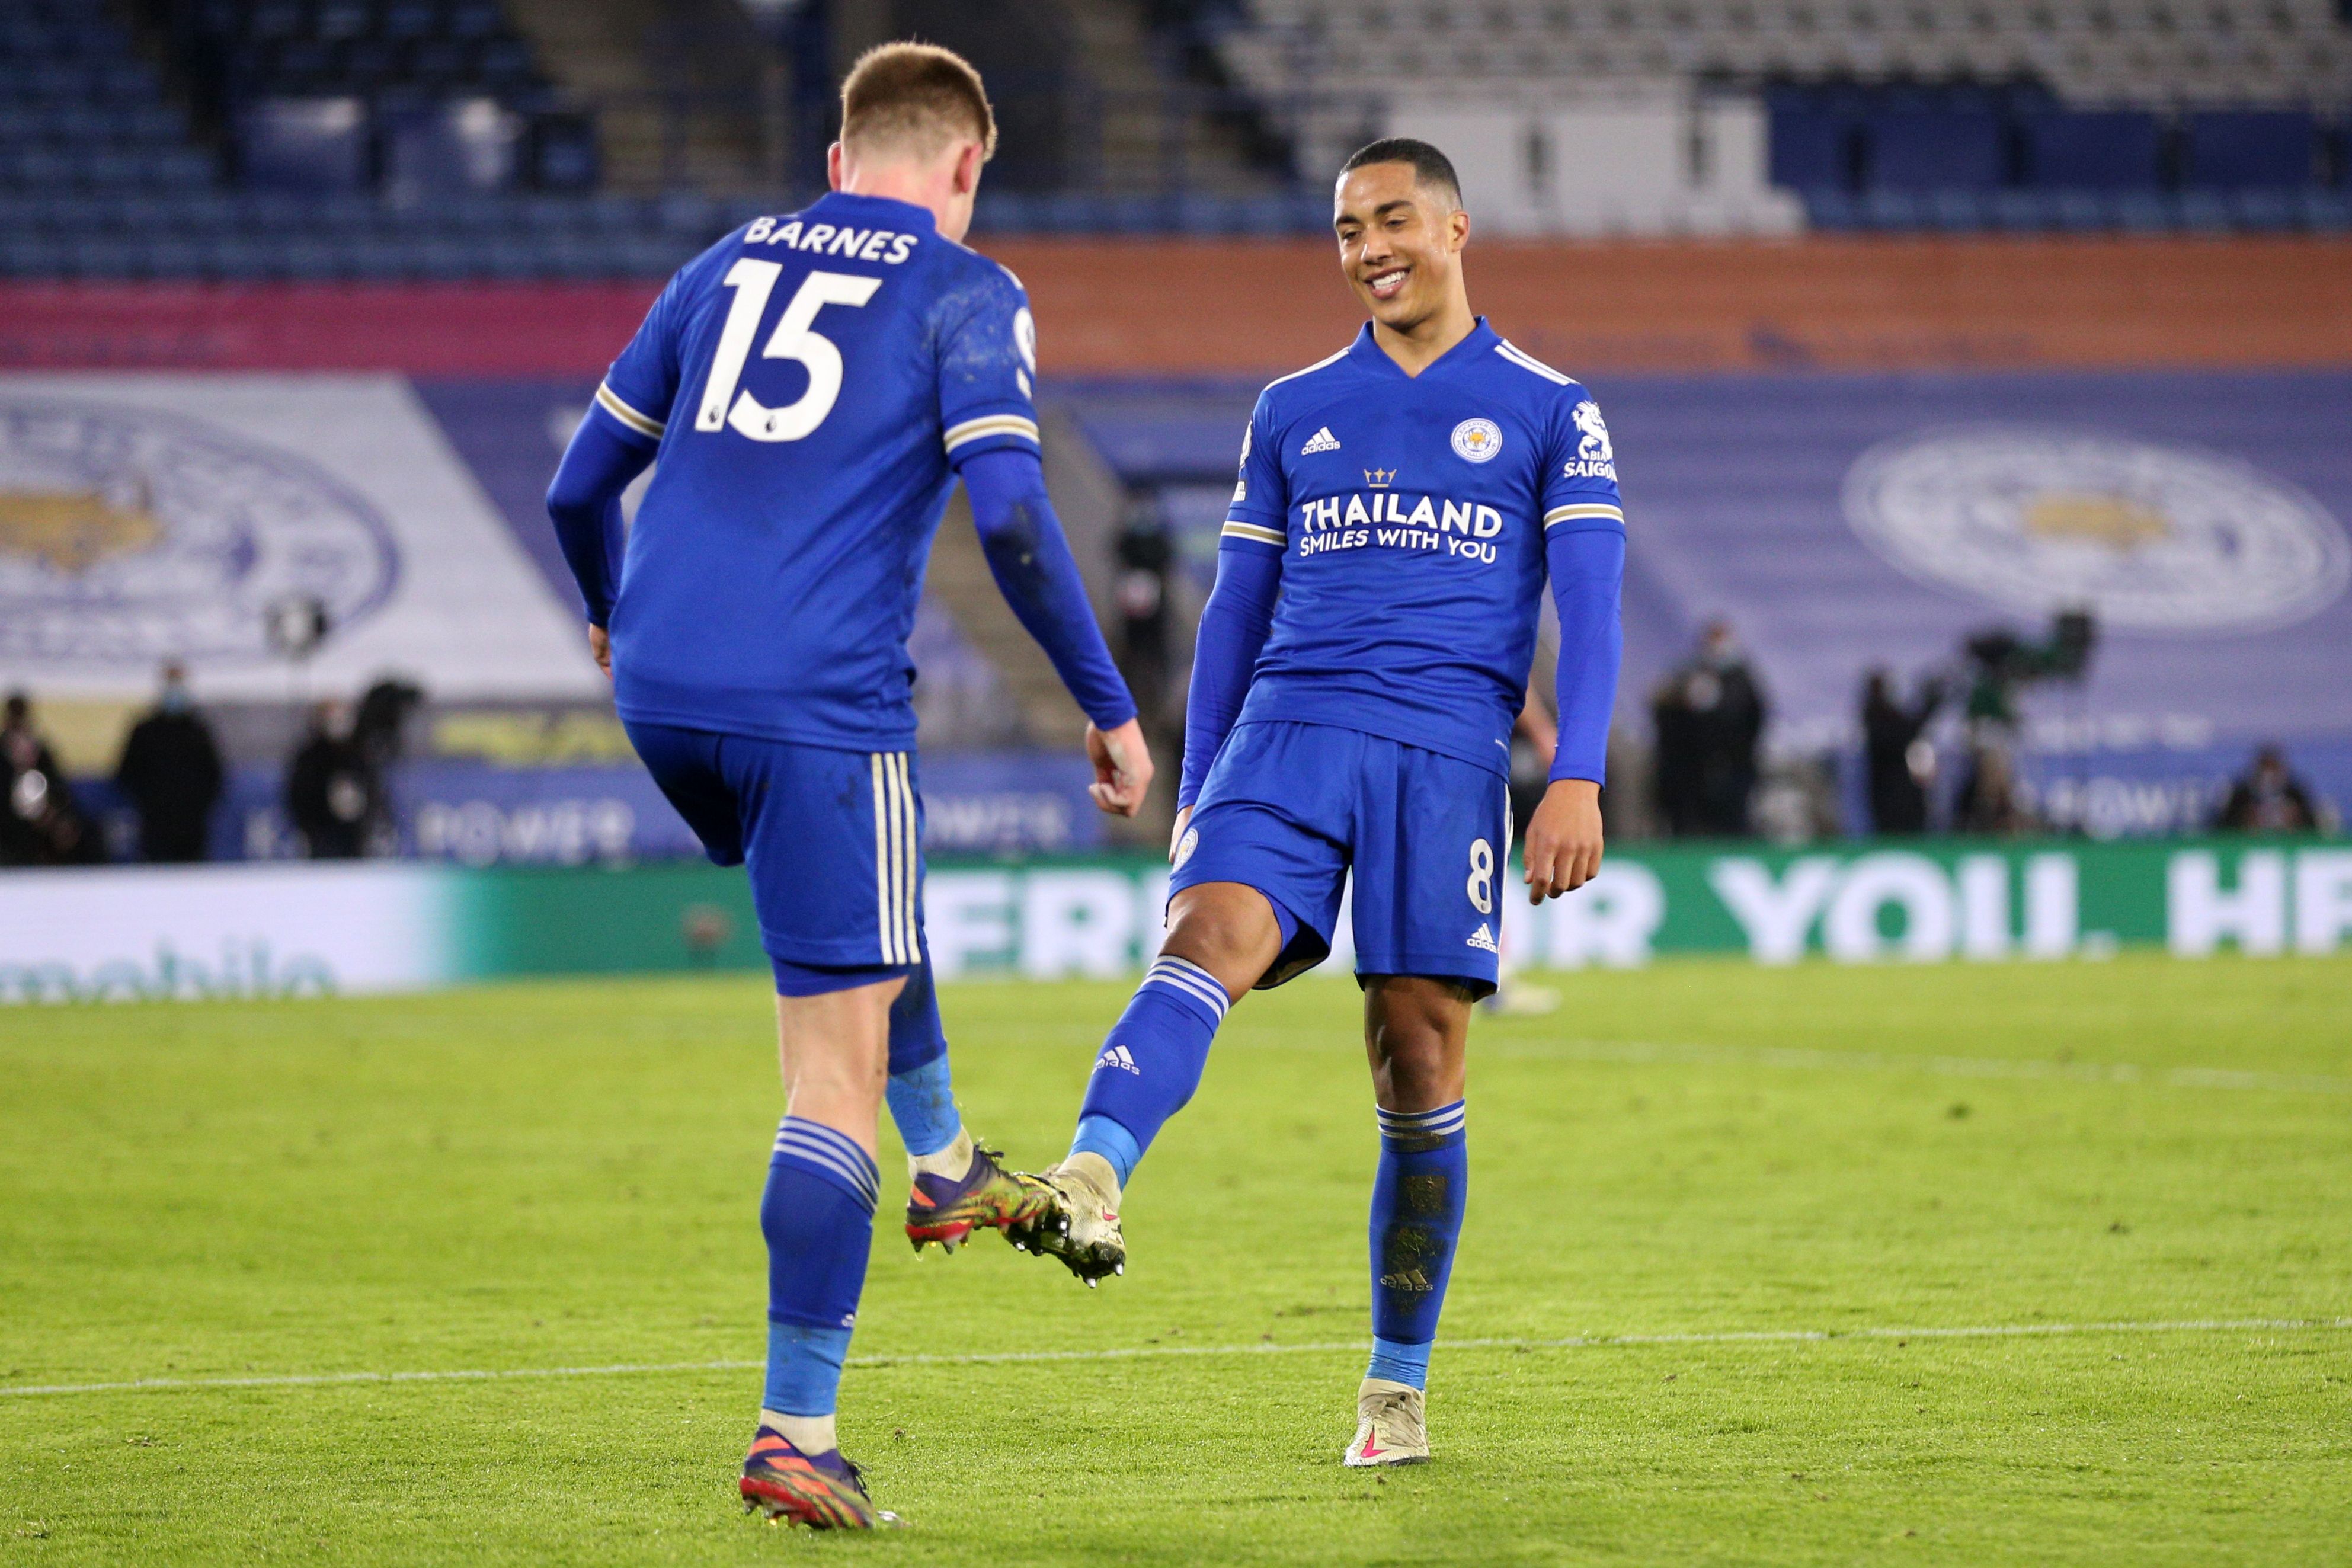 El Leicester derrotó como local 2-0 al Southampton, con goles de Maddison y Barnes. (Foto Prensa Libre: AFP)